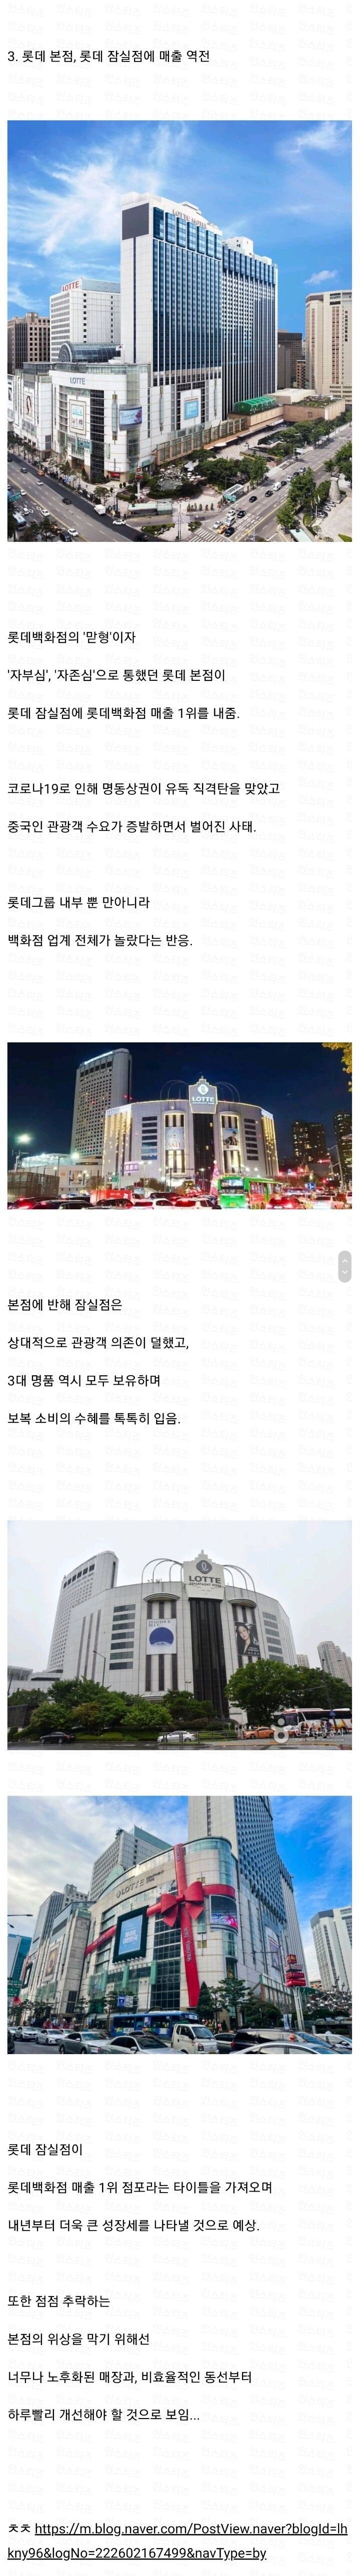 1조 클럽 달성한 한국의 백화점들.jpg